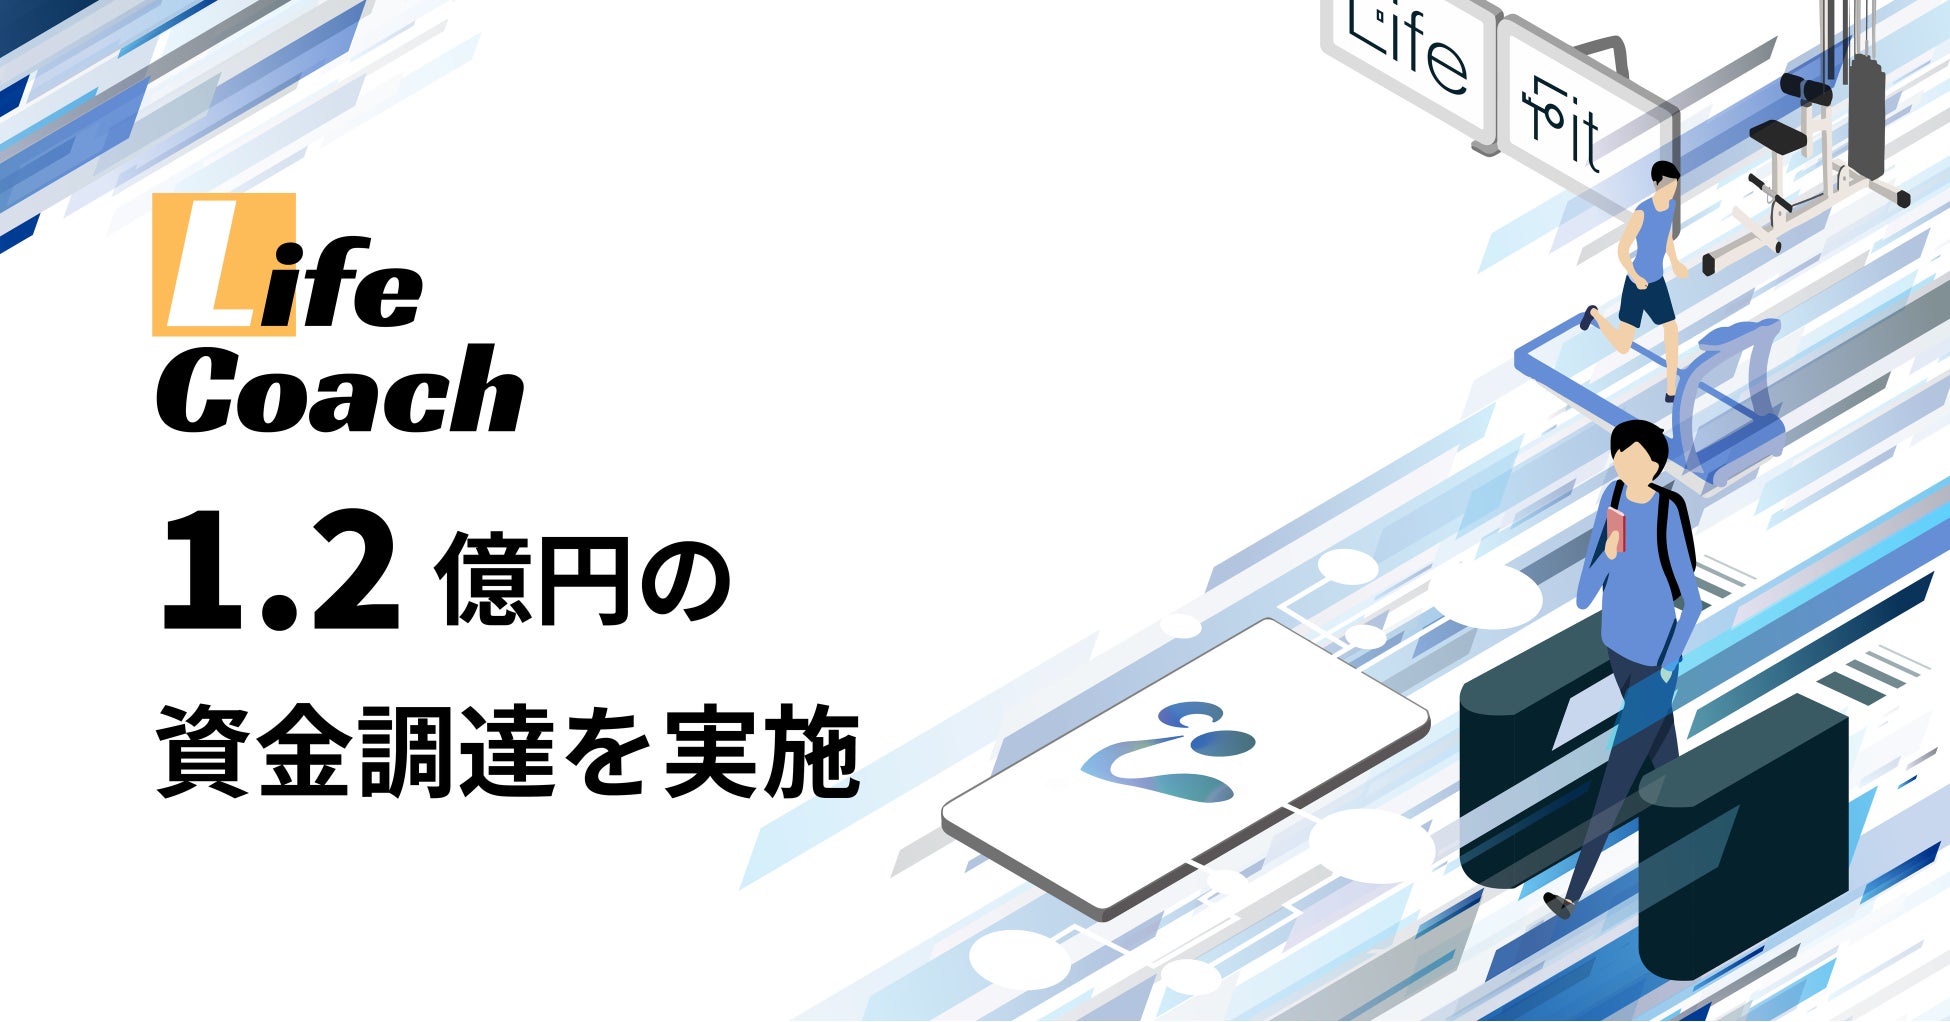 次世代型フィットネスジム「LifeFit」運営のLifeCoach、プレシリーズAラウンドで約1.2億円の資金調達を実施